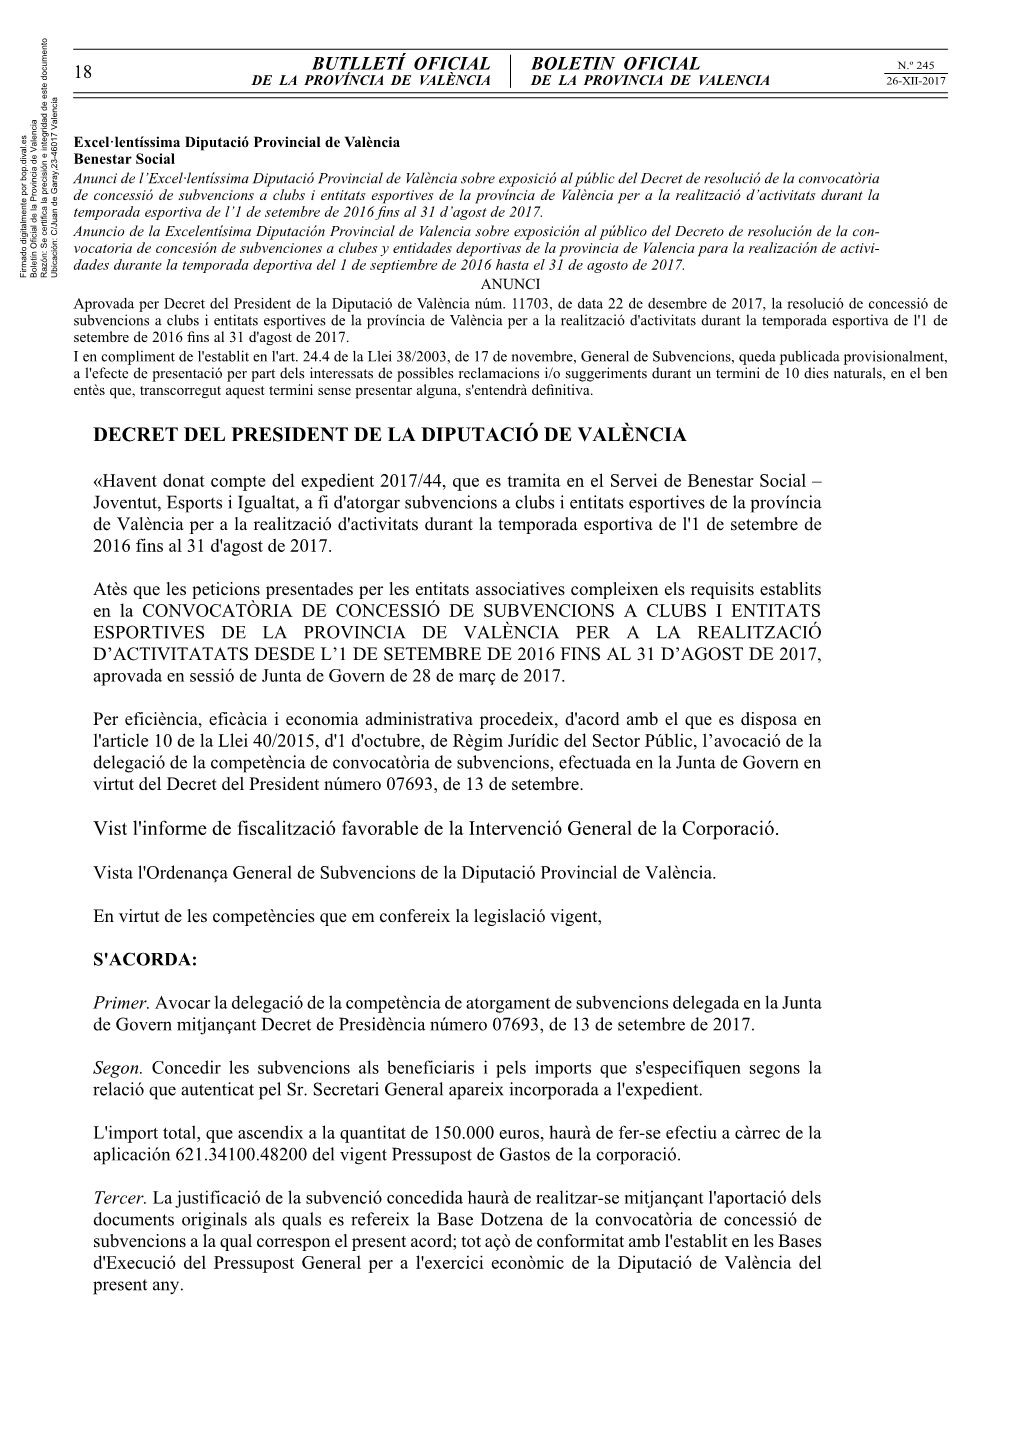 DECRET DEL PRESIDENT DE LA DIPUTACIÓ DE VALÈNCIA Vist L'informe De Fiscalització Favorable De La Intervenció General De La